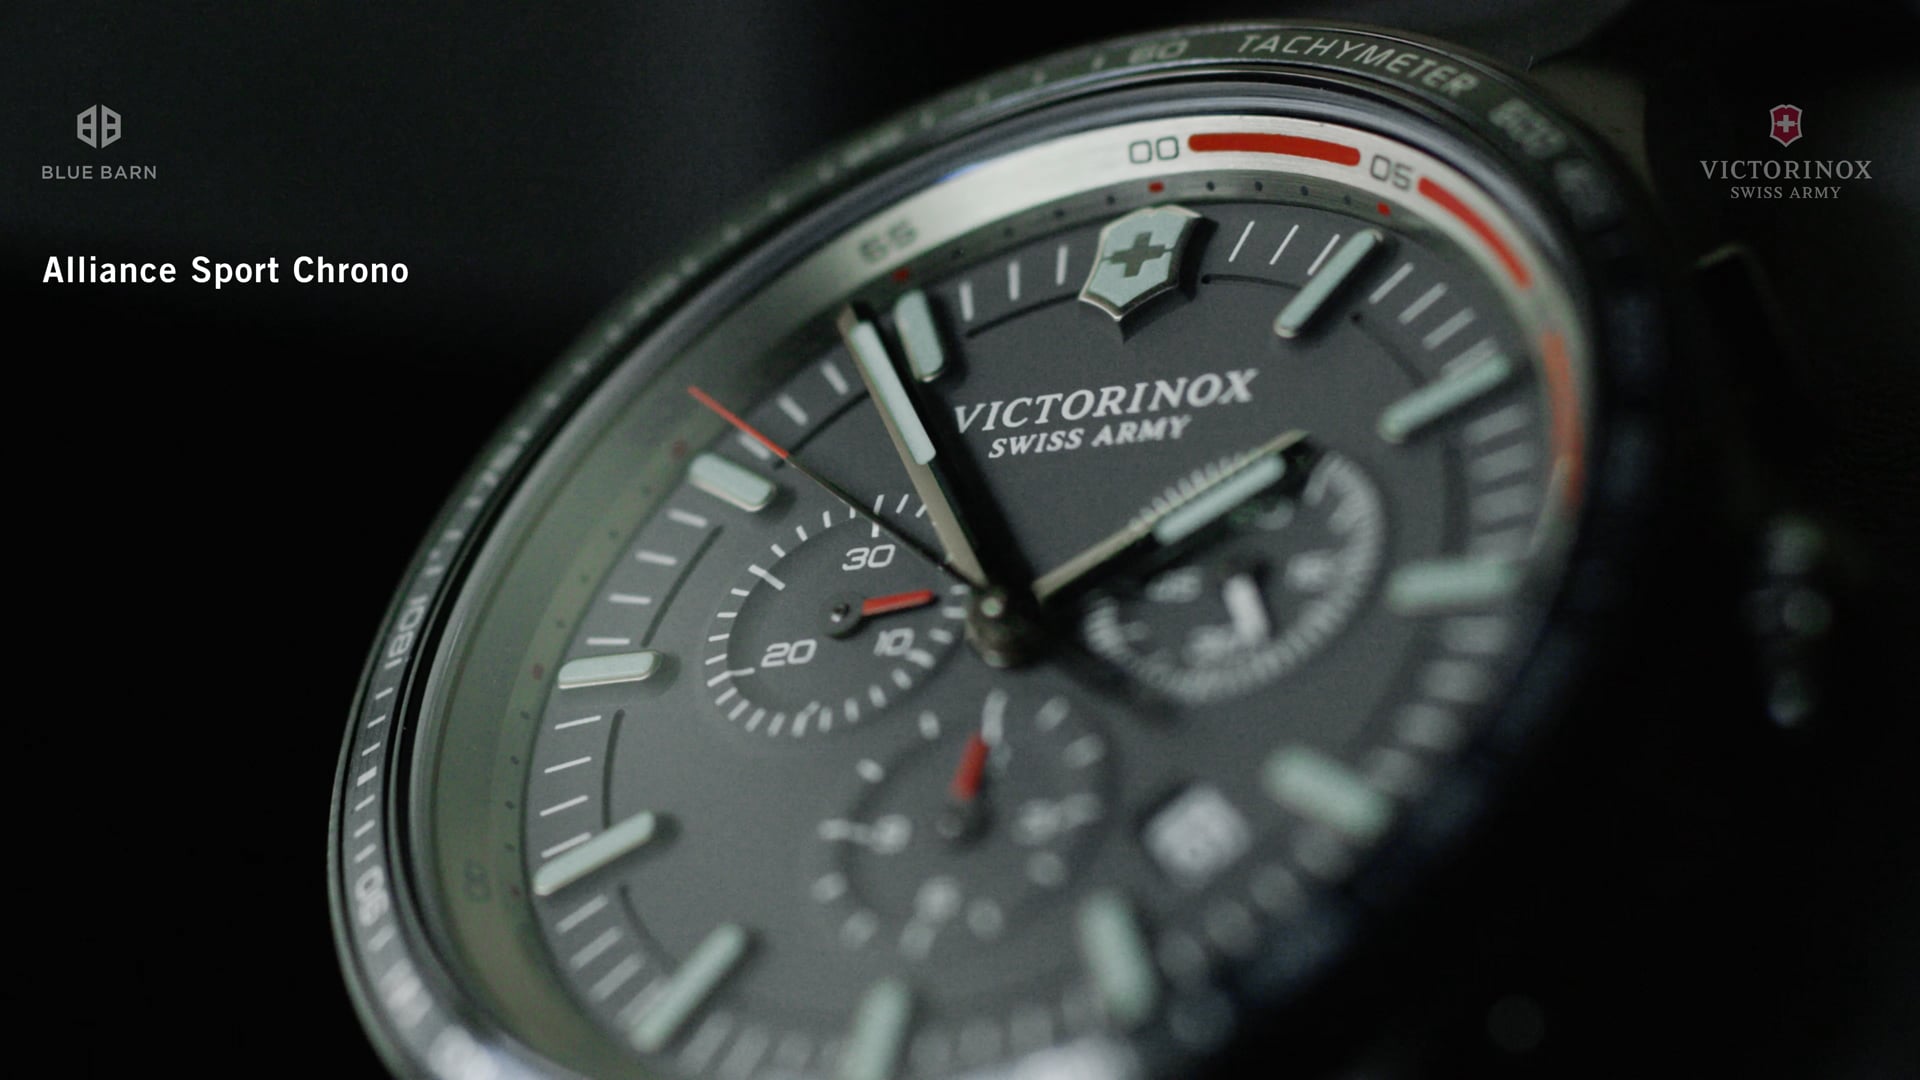 Victorinox Swiss Army - Alliance Sport Chrono Watch